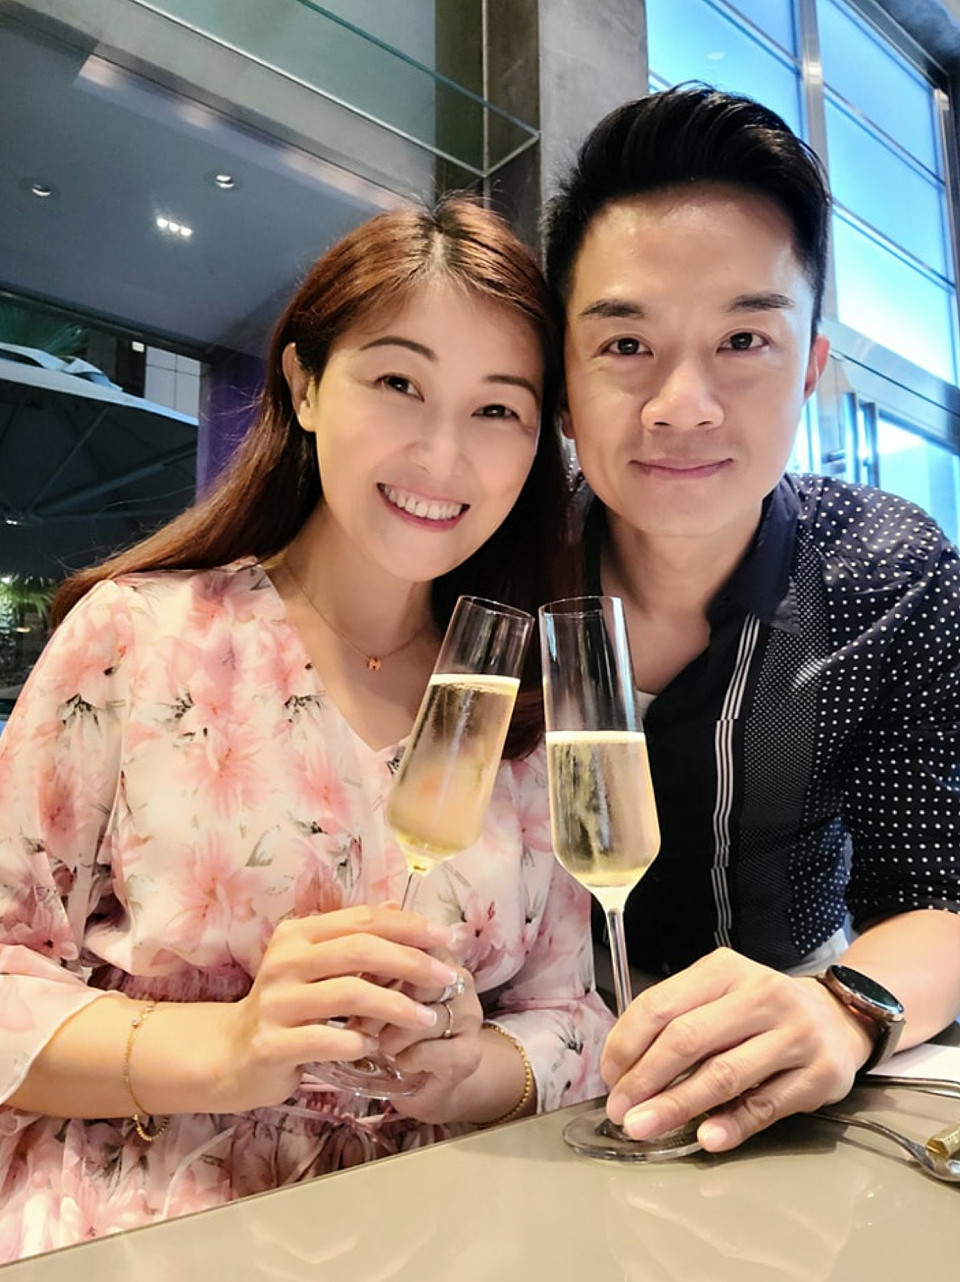 胡诺言陈琪出去吃浪漫晚餐庆祝结婚14周年 夫妻俩分享恩爱合影 - 2